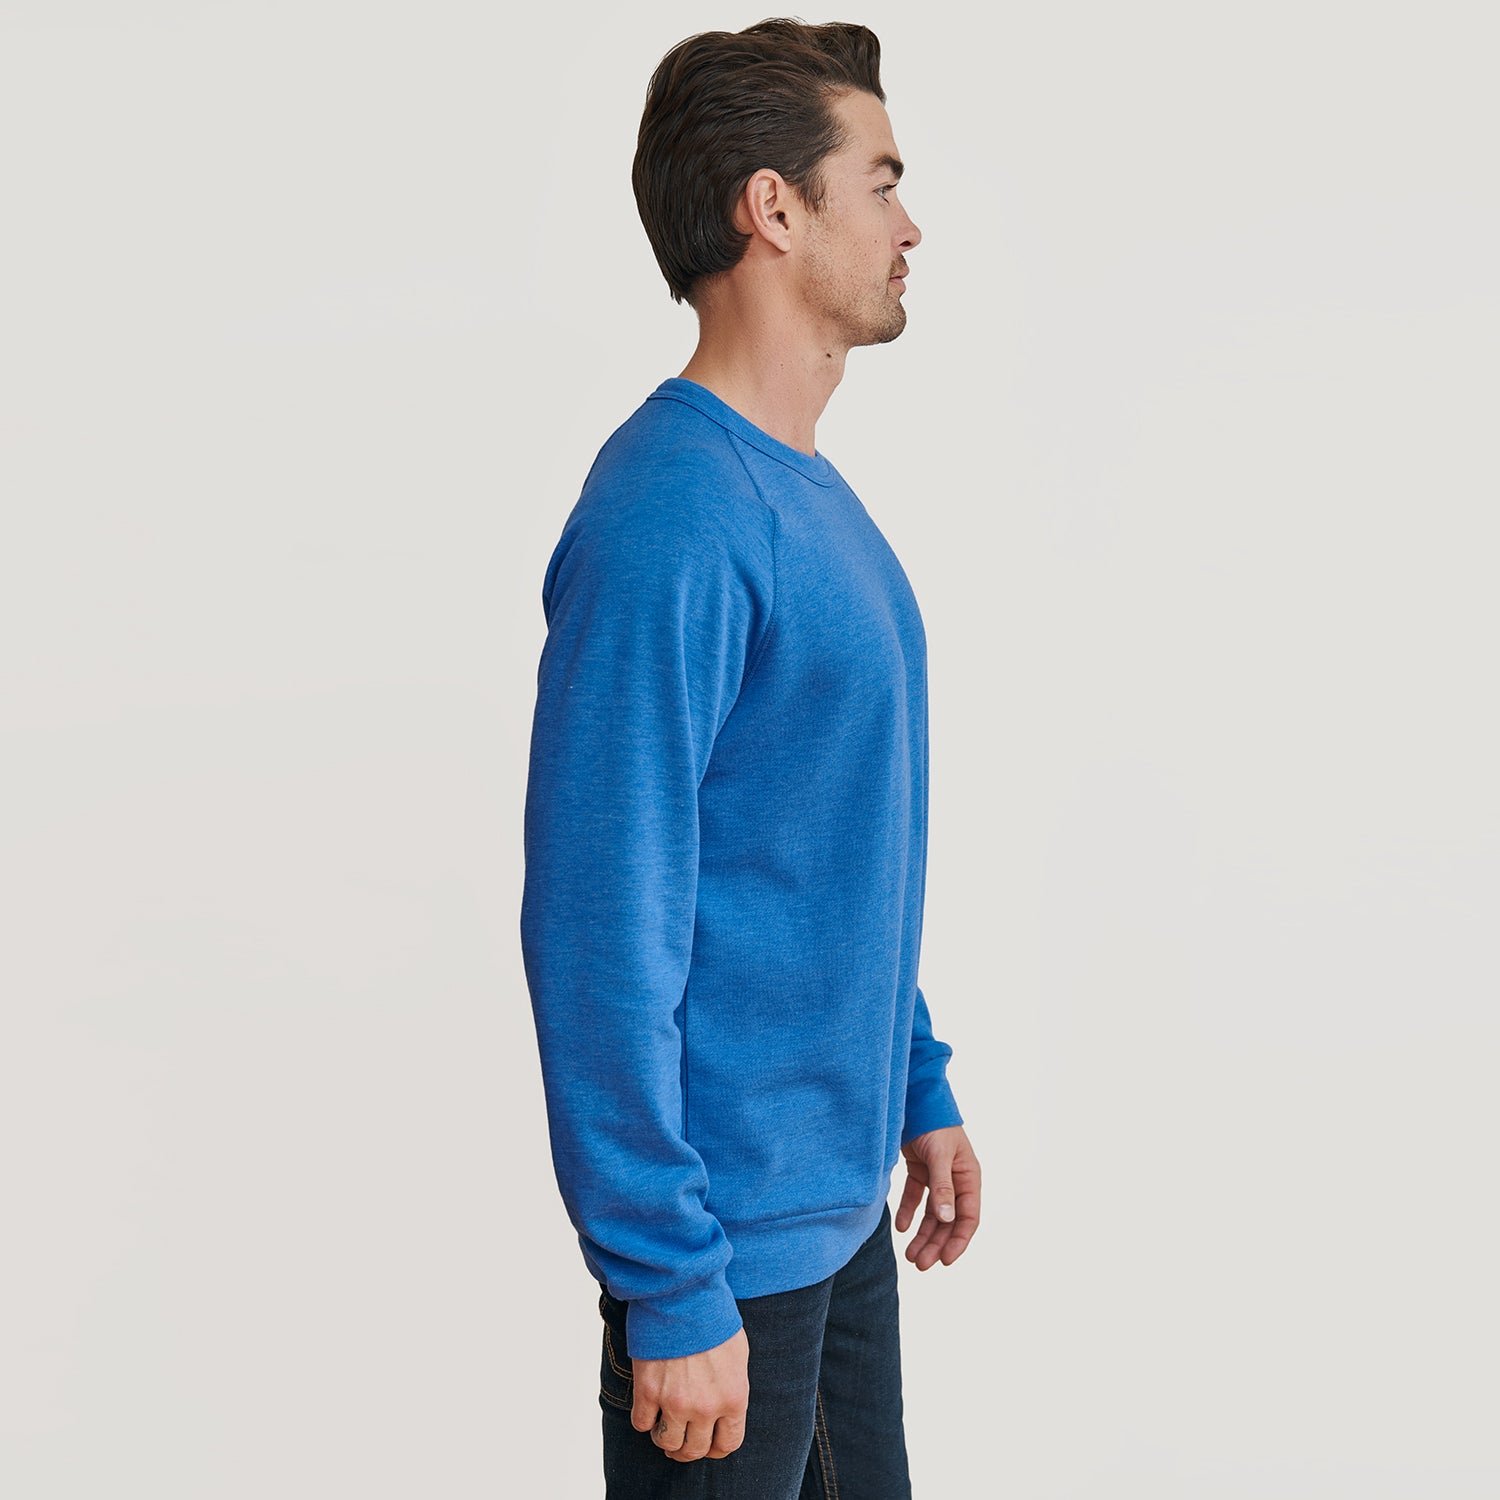 Pacific Blue Fleece Pull Over Sweatshirt